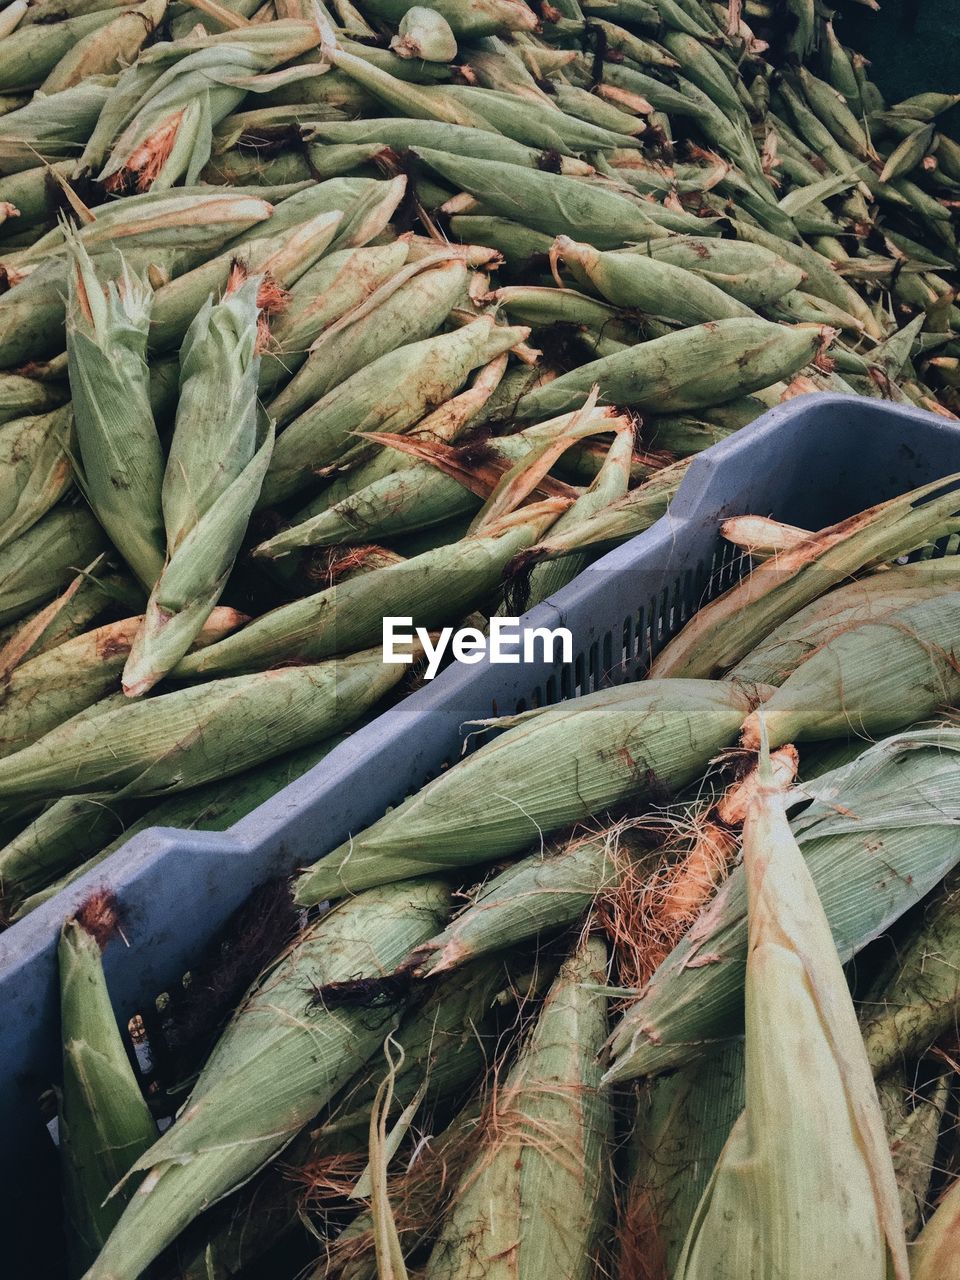 Full frame shot of corns for sale in market